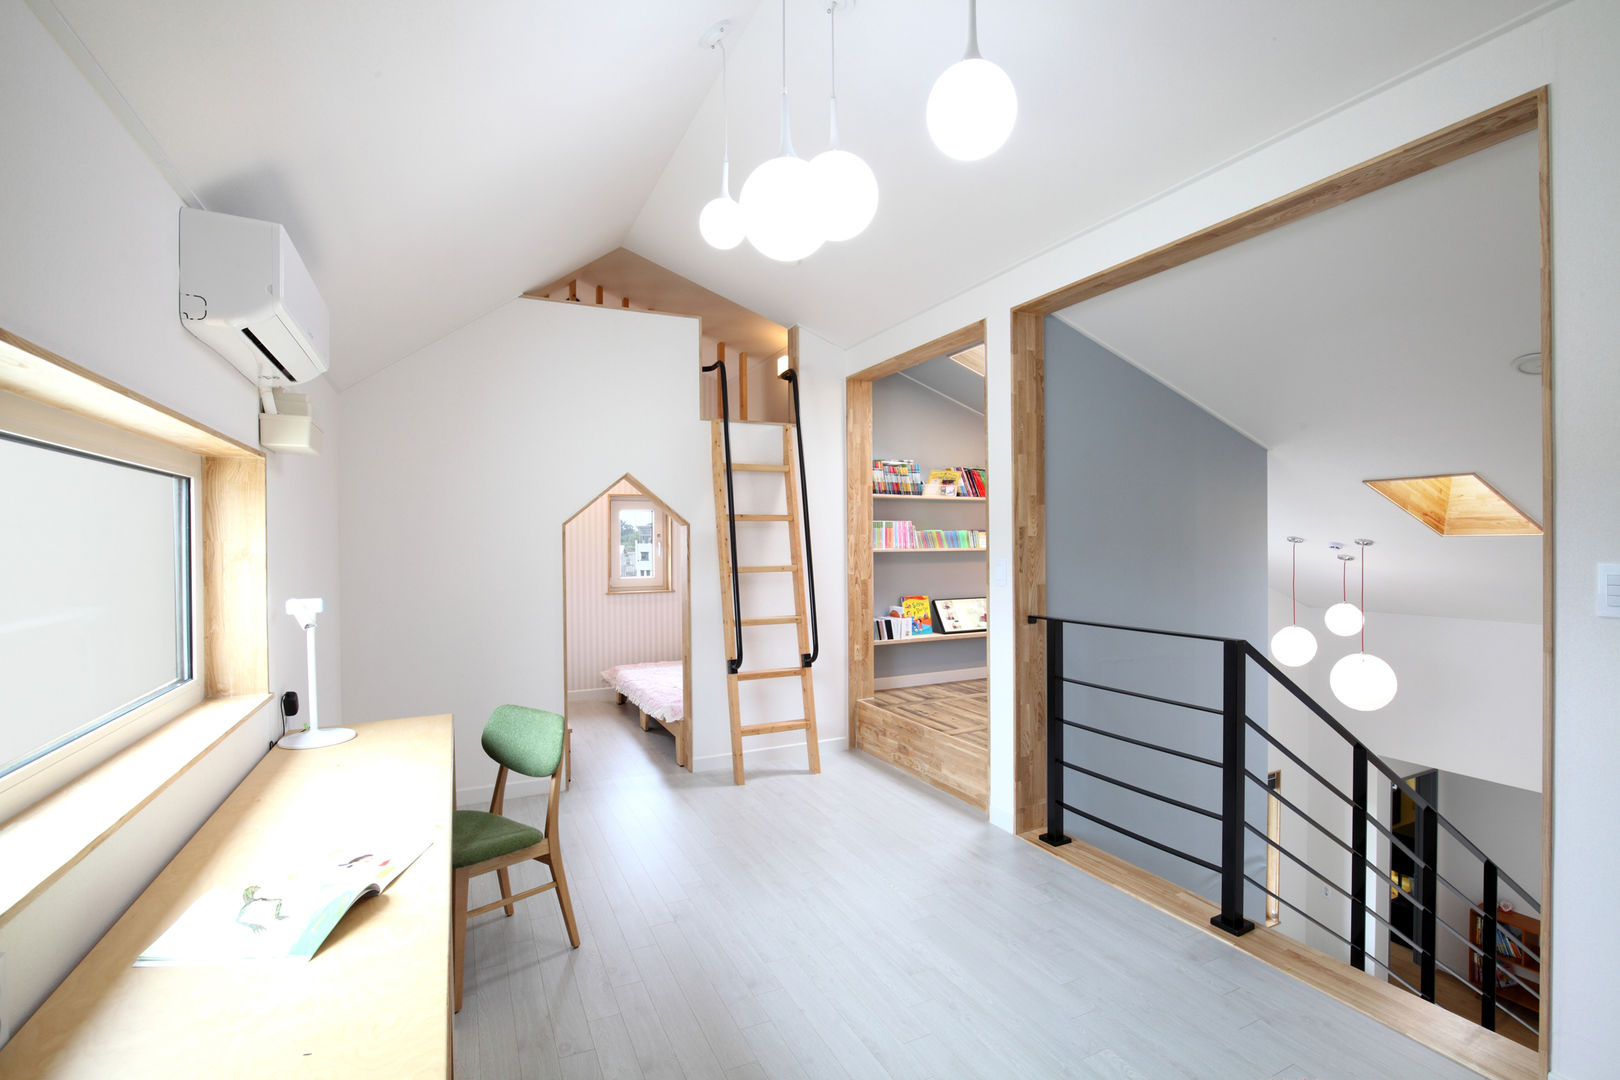 장성 - 세아이가 있는 하얀집, 주택설계전문 디자인그룹 홈스타일토토 주택설계전문 디자인그룹 홈스타일토토 Nursery/kid’s room Chipboard